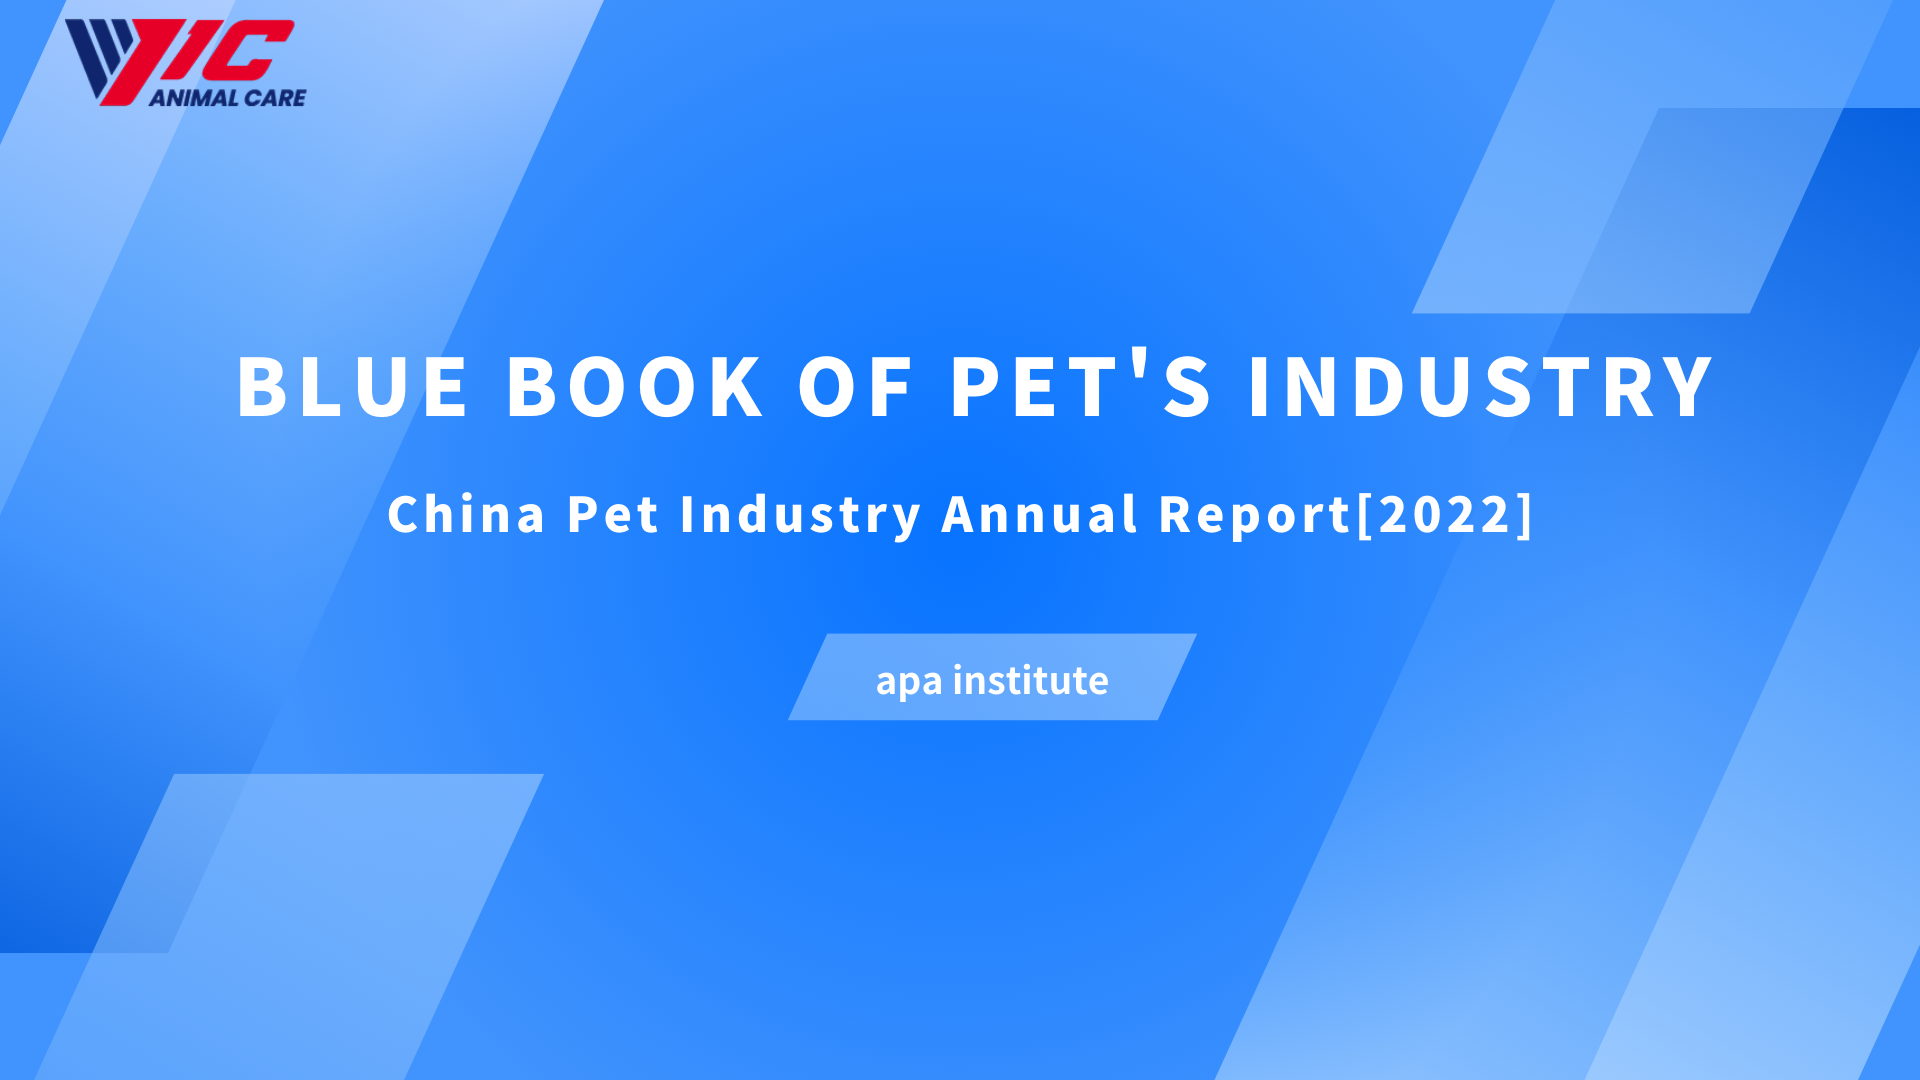 PET's Industry-चीन पाल्तु उद्योगको वार्षिक रिपोर्टको ब्लू बुक[2022]